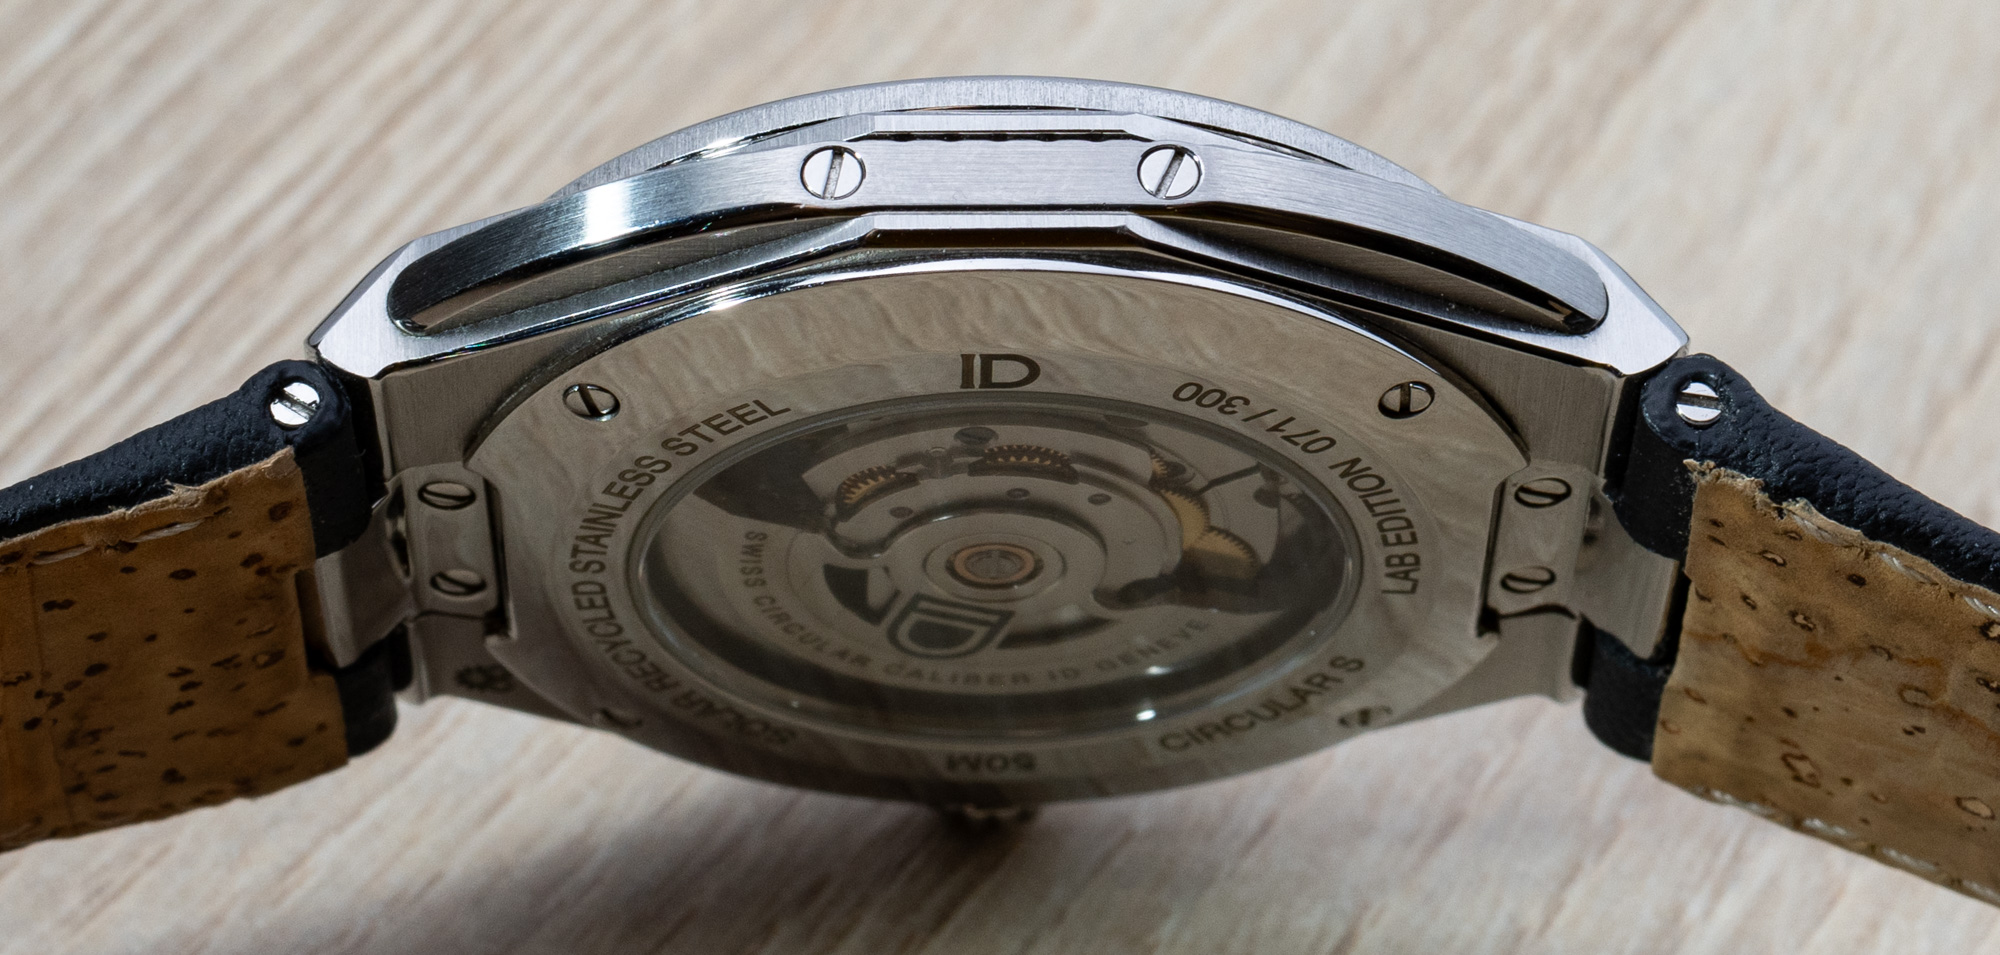 Обзор часов: Часы ID Geneve Circular S из стали цвета солнечной ковки